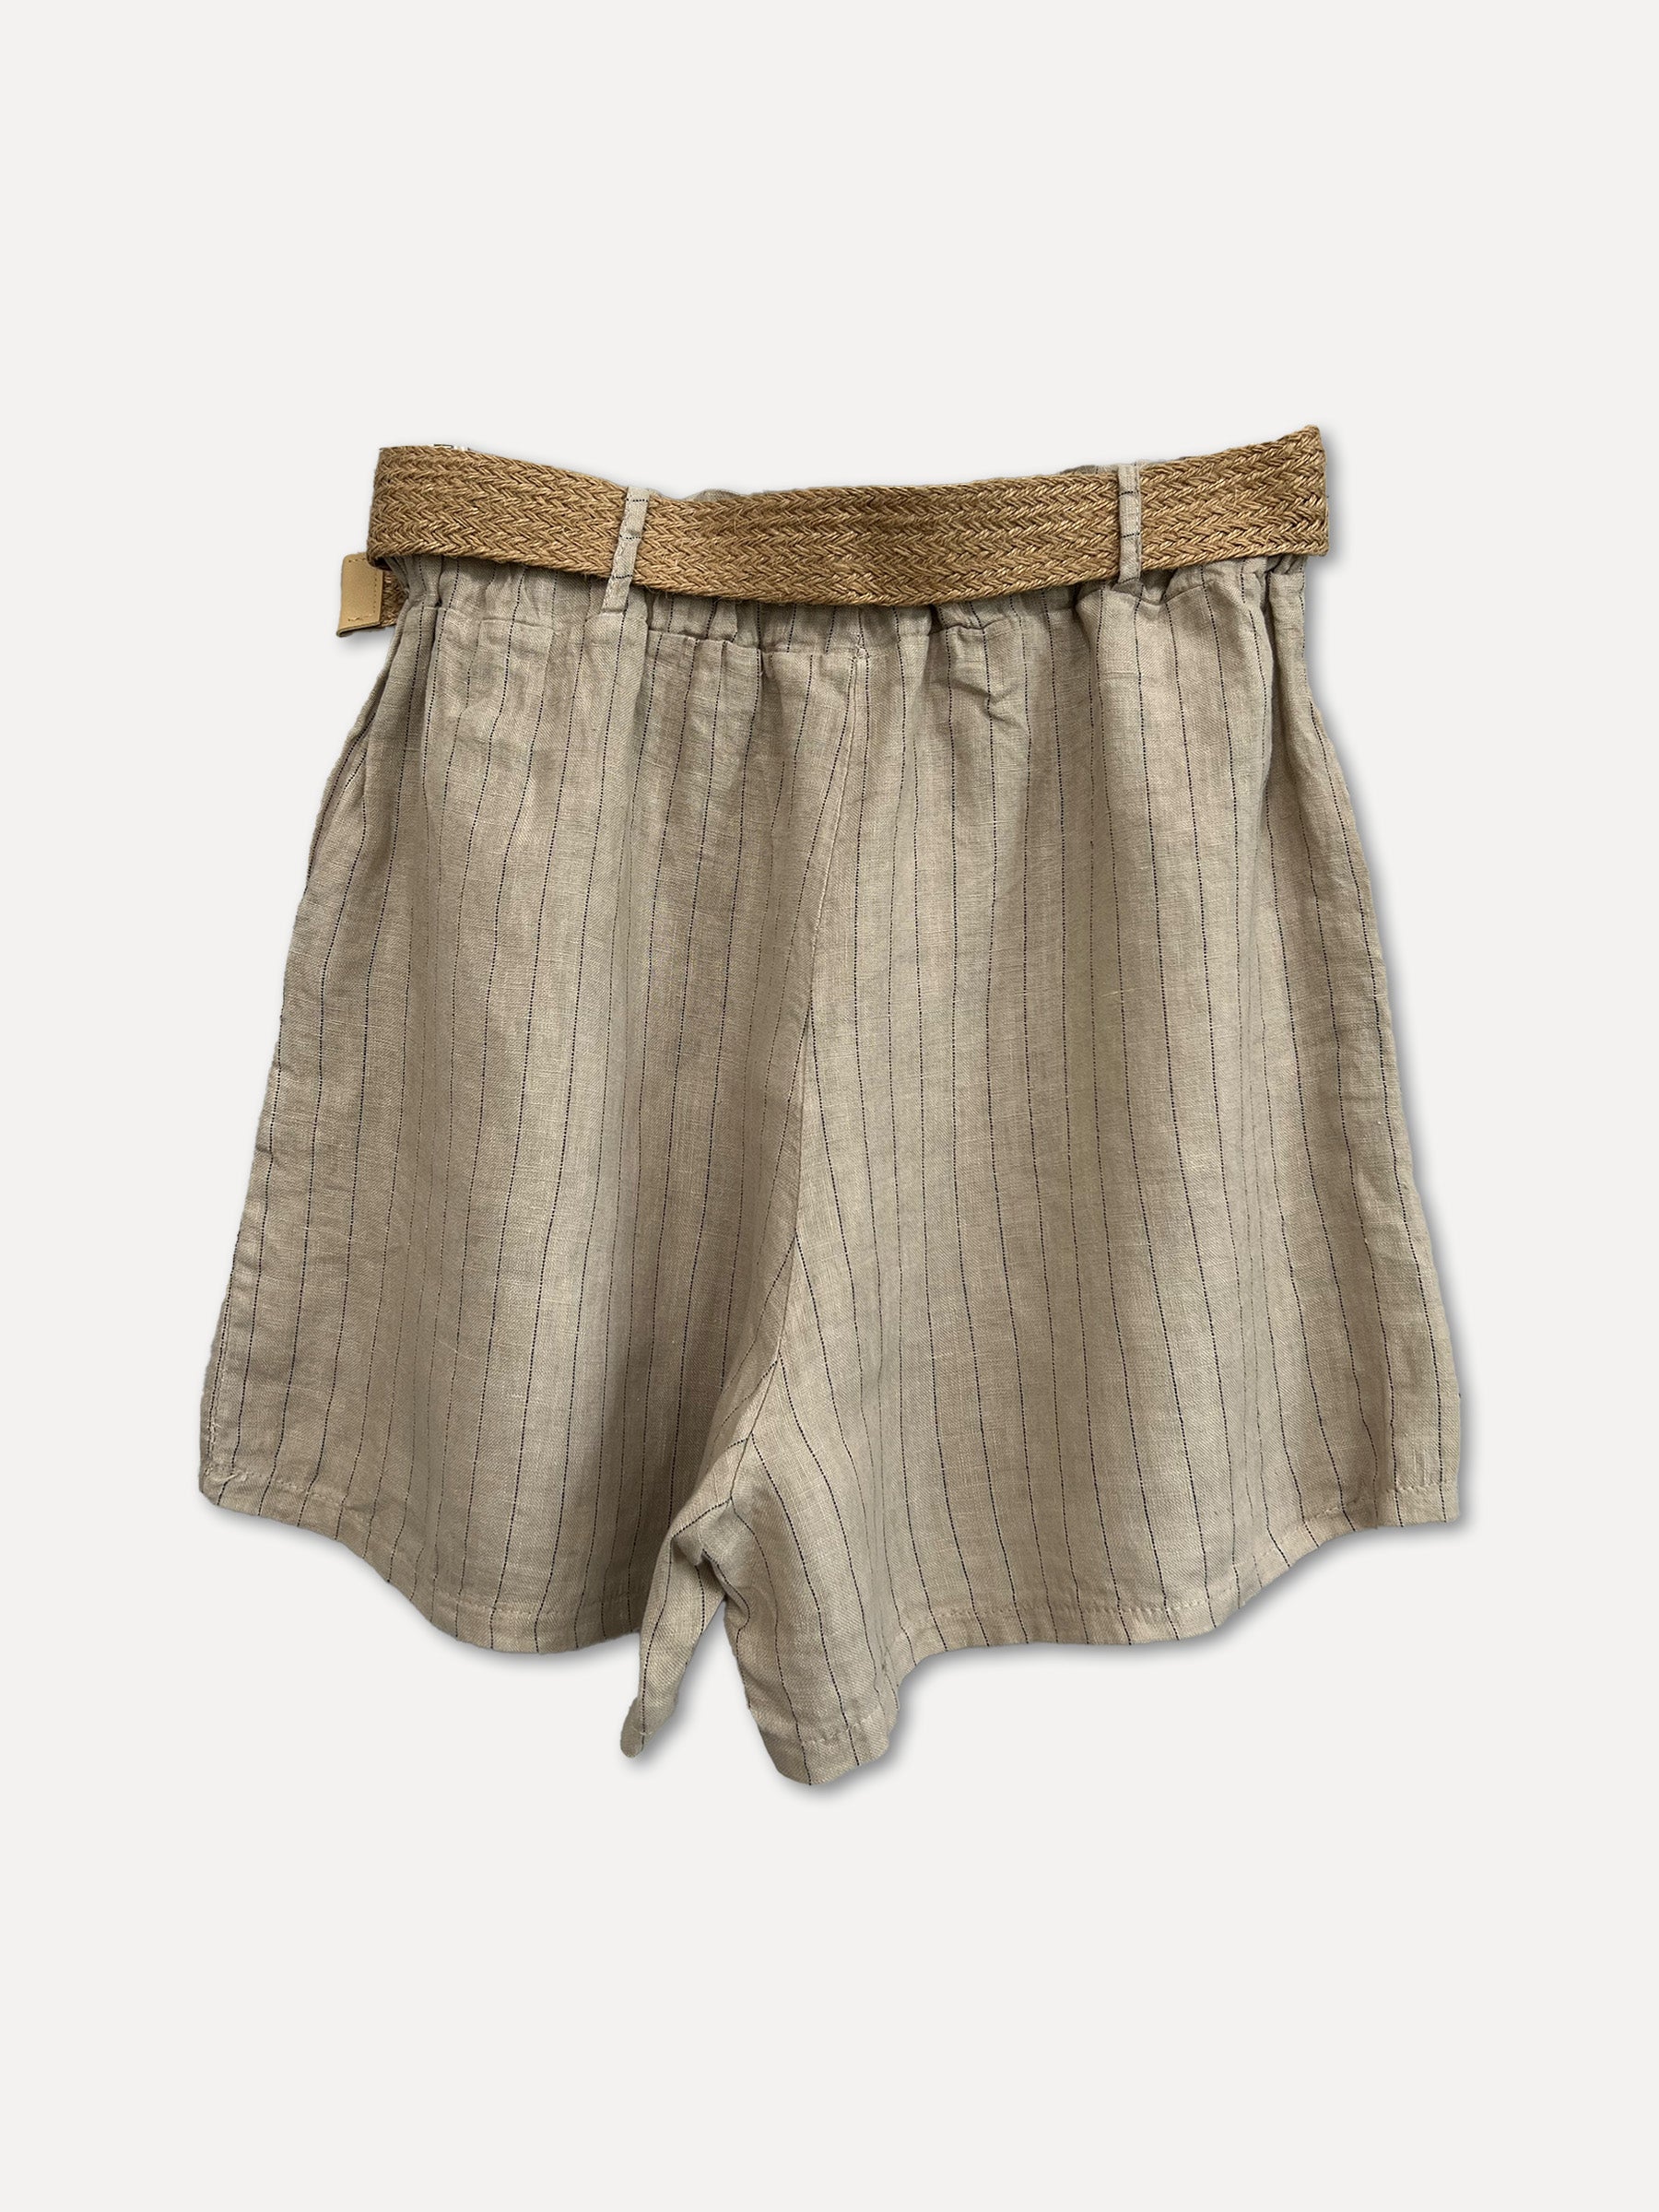 VIENNA Stripe Shorts, Beige